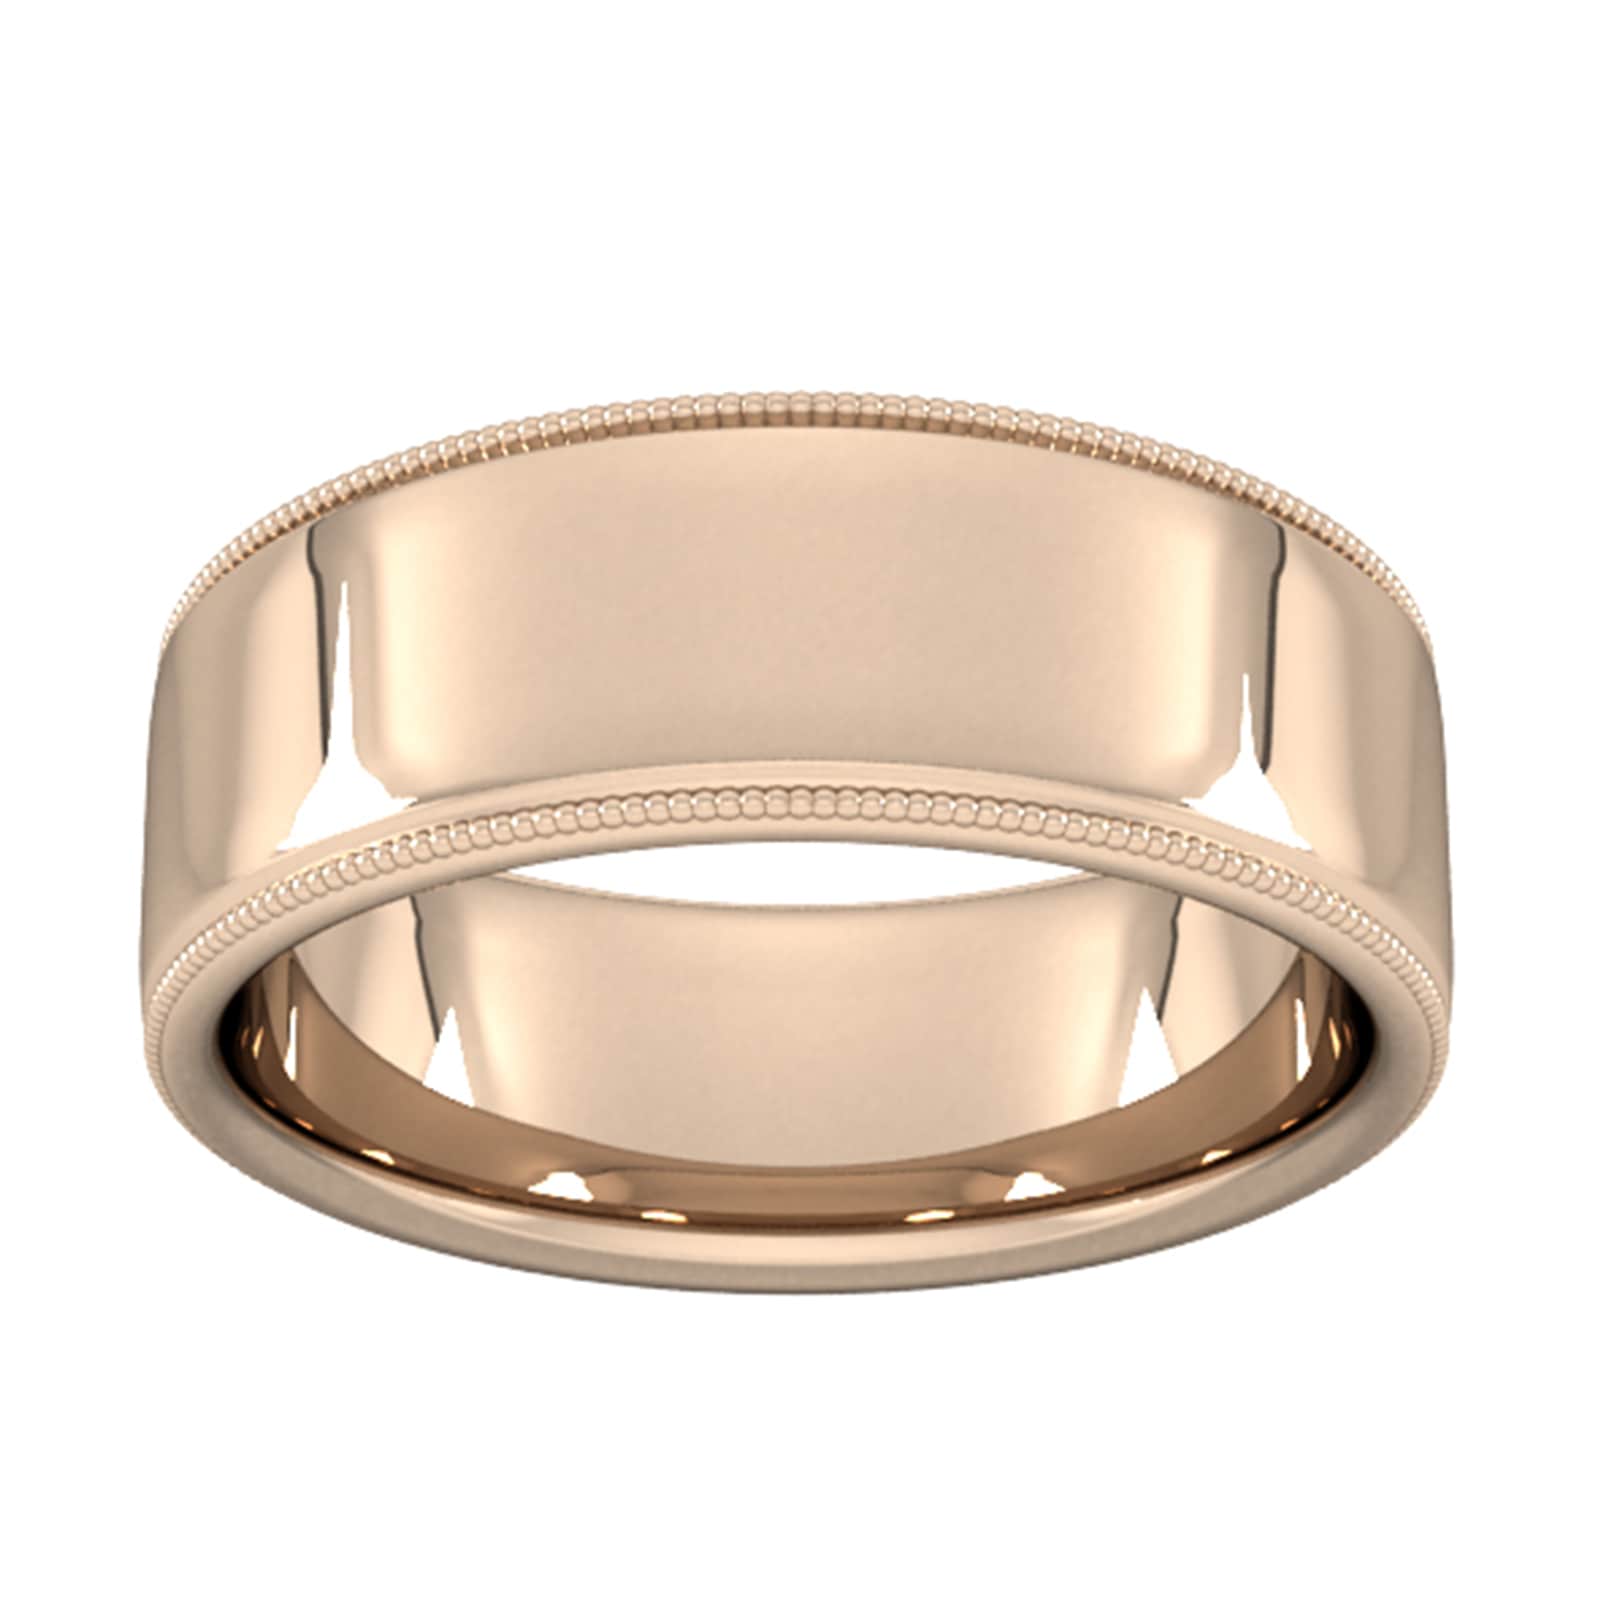 8mm Slight Court Heavy Milgrain Edge Wedding Ring In 18 Carat Rose Gold - Ring Size L